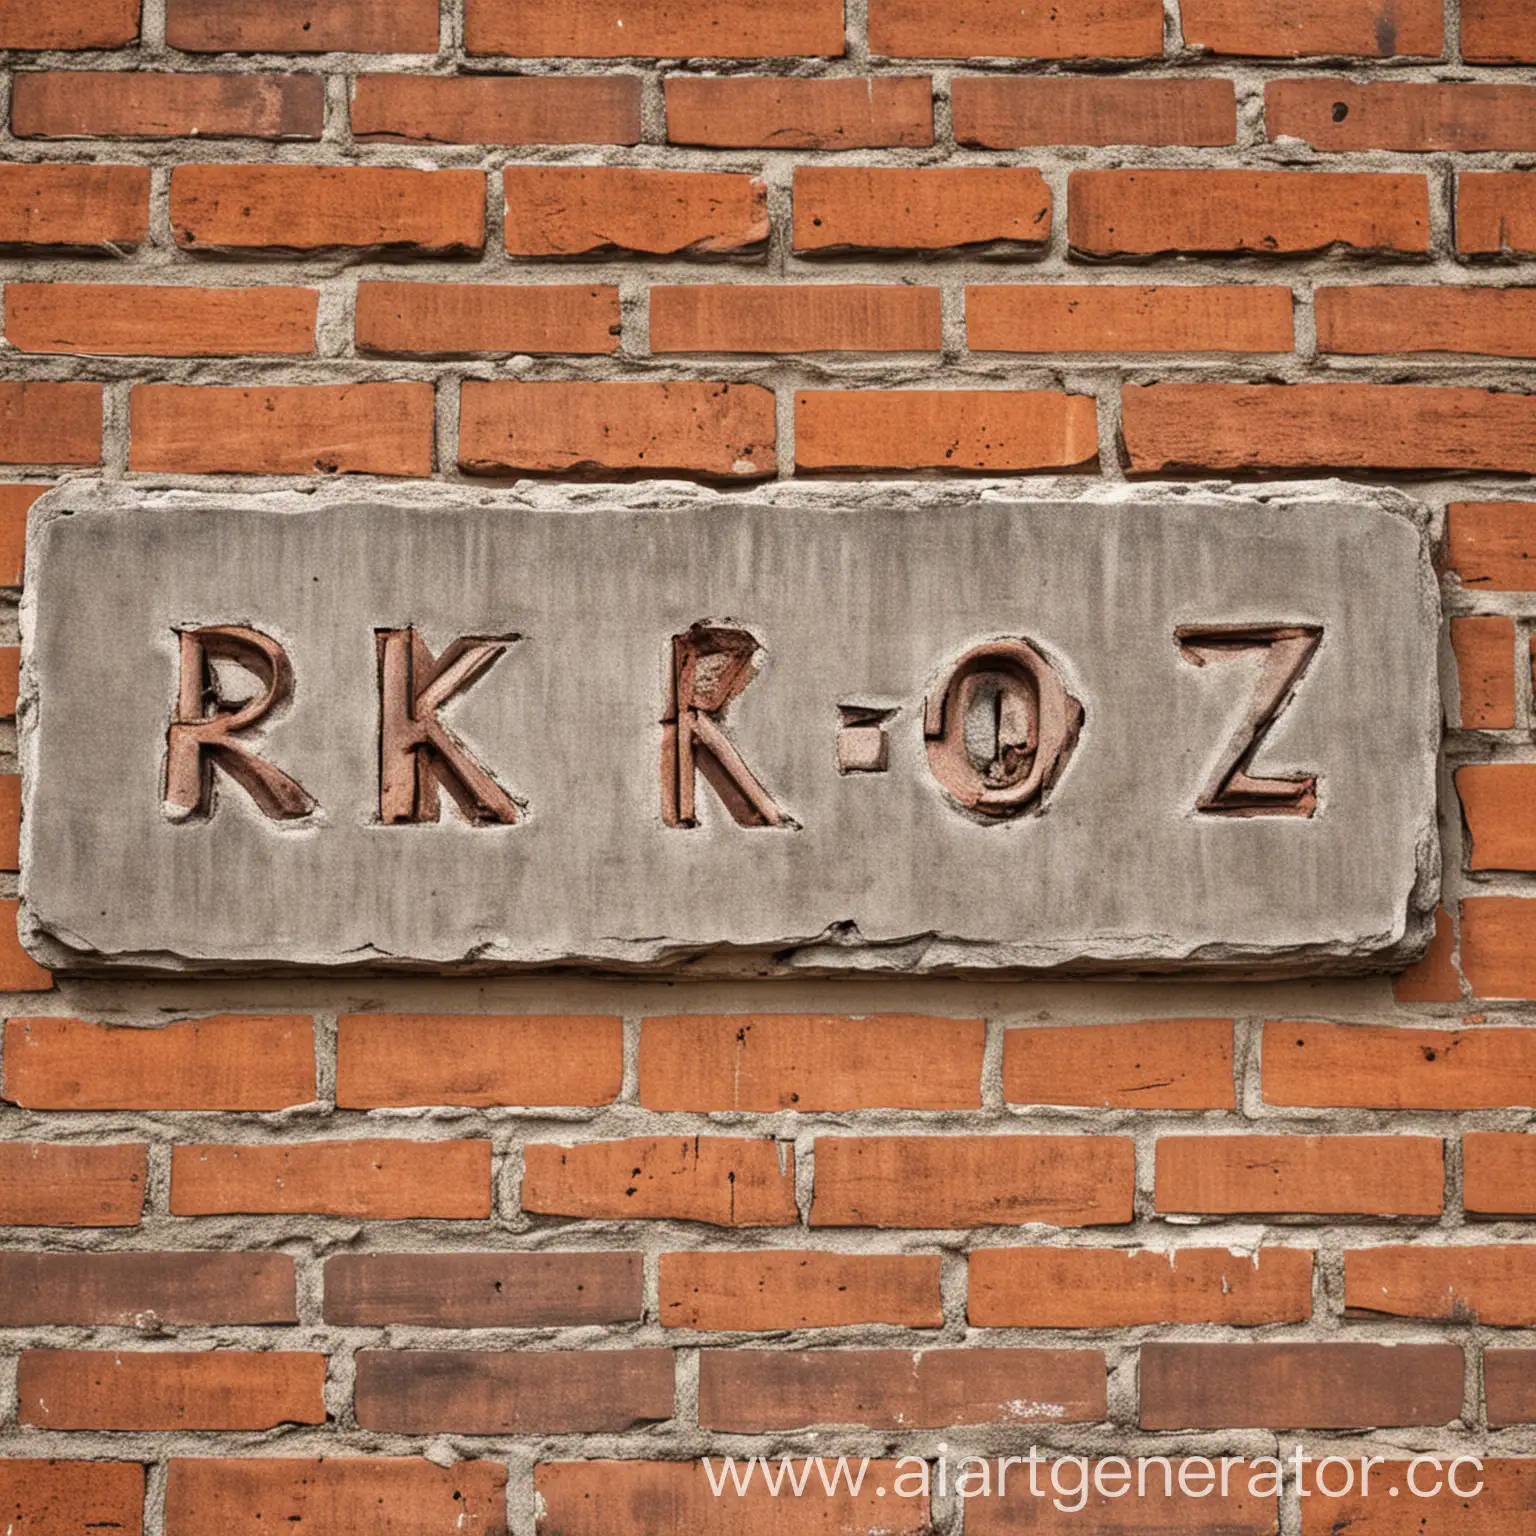 Graffiti-Art-Urban-Brick-Wall-with-RKOZ-Inscription